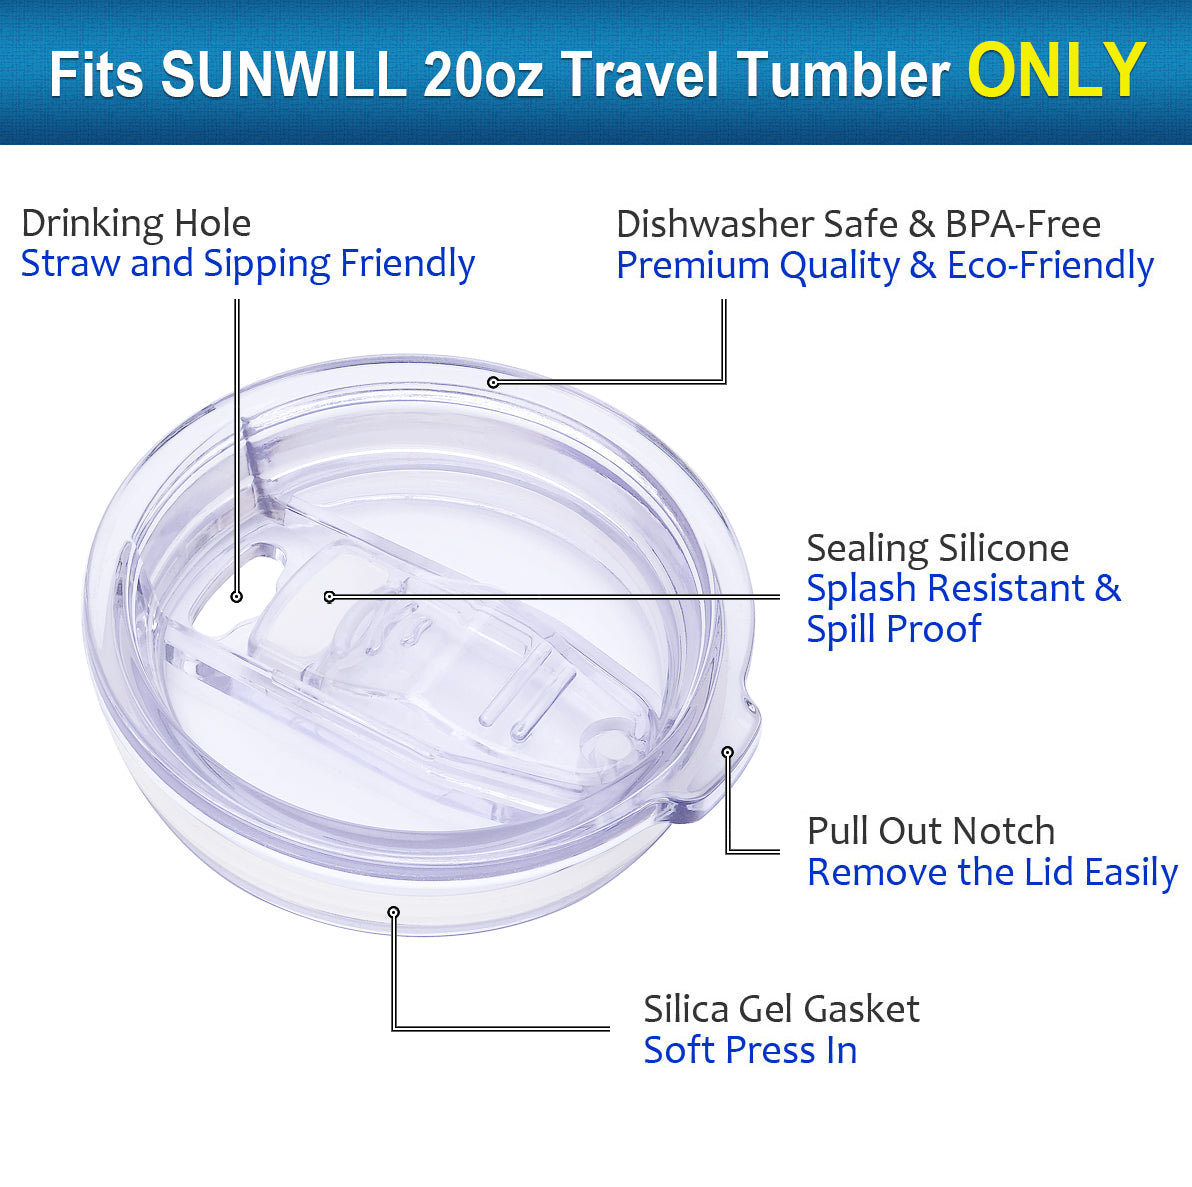 20 oz Tumbler Lids Replacement Spill-proof Splash Resistant Lid